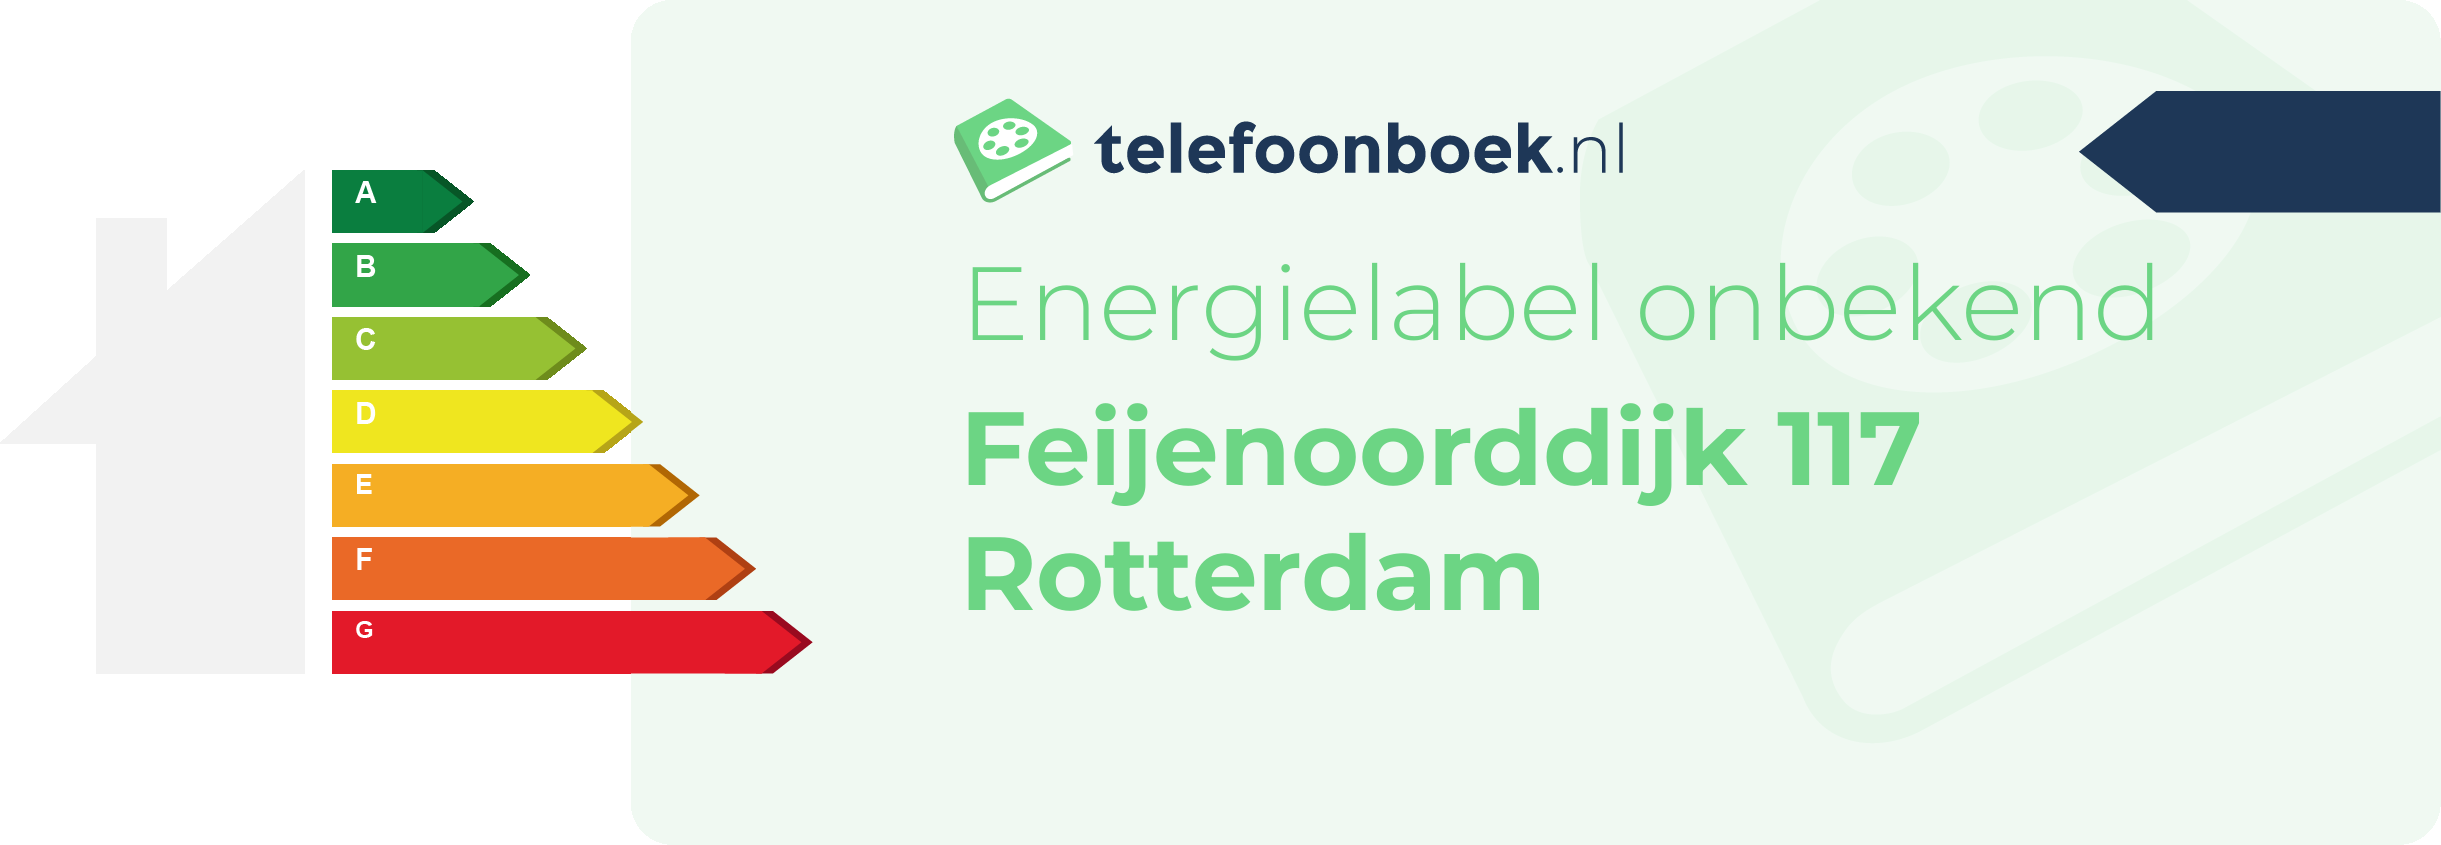 Energielabel Feijenoorddijk 117 Rotterdam